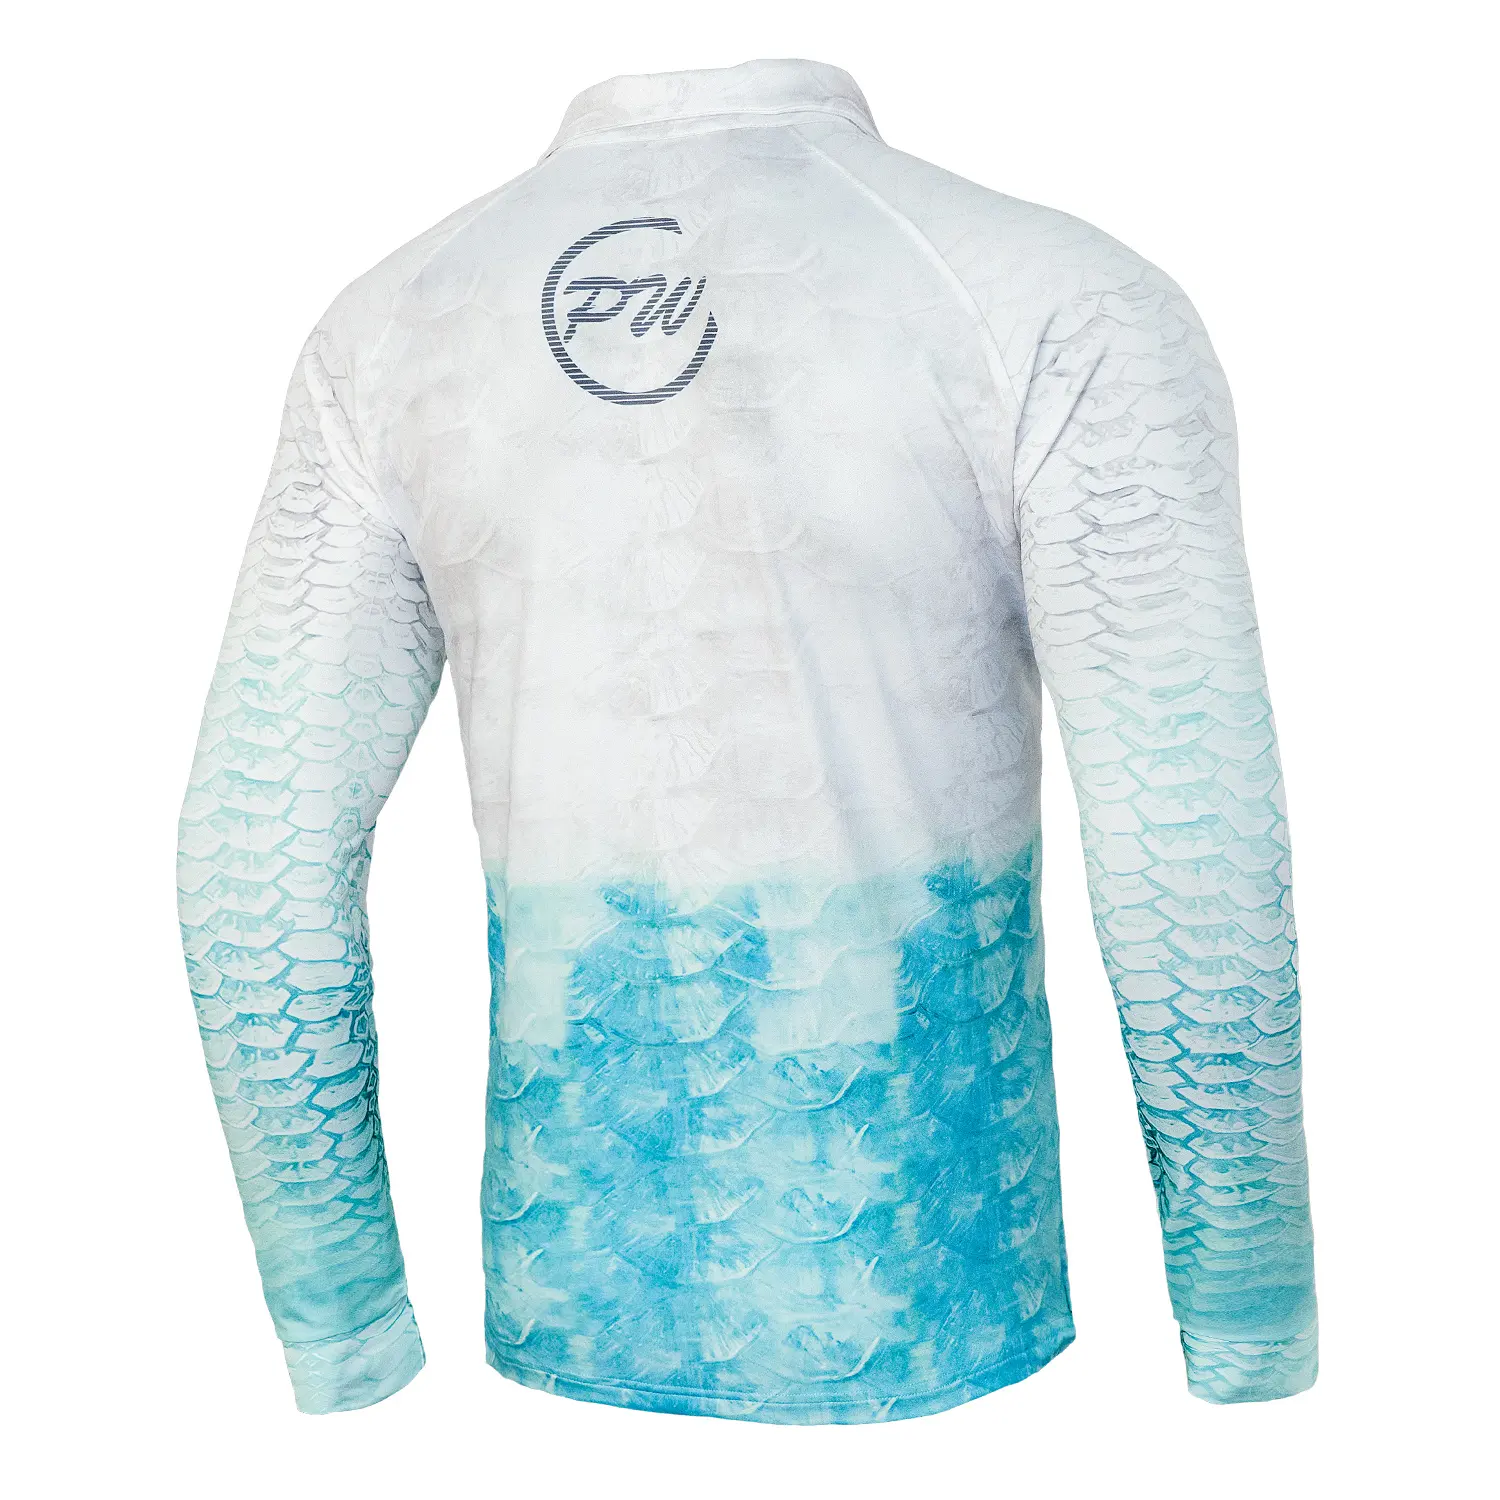 Özel balıkçılık gömlek tasarım kendi hızlı kuru güneş koruma uzun kollu olta takımı Tees düğme gömlek UPF SPF 50 +